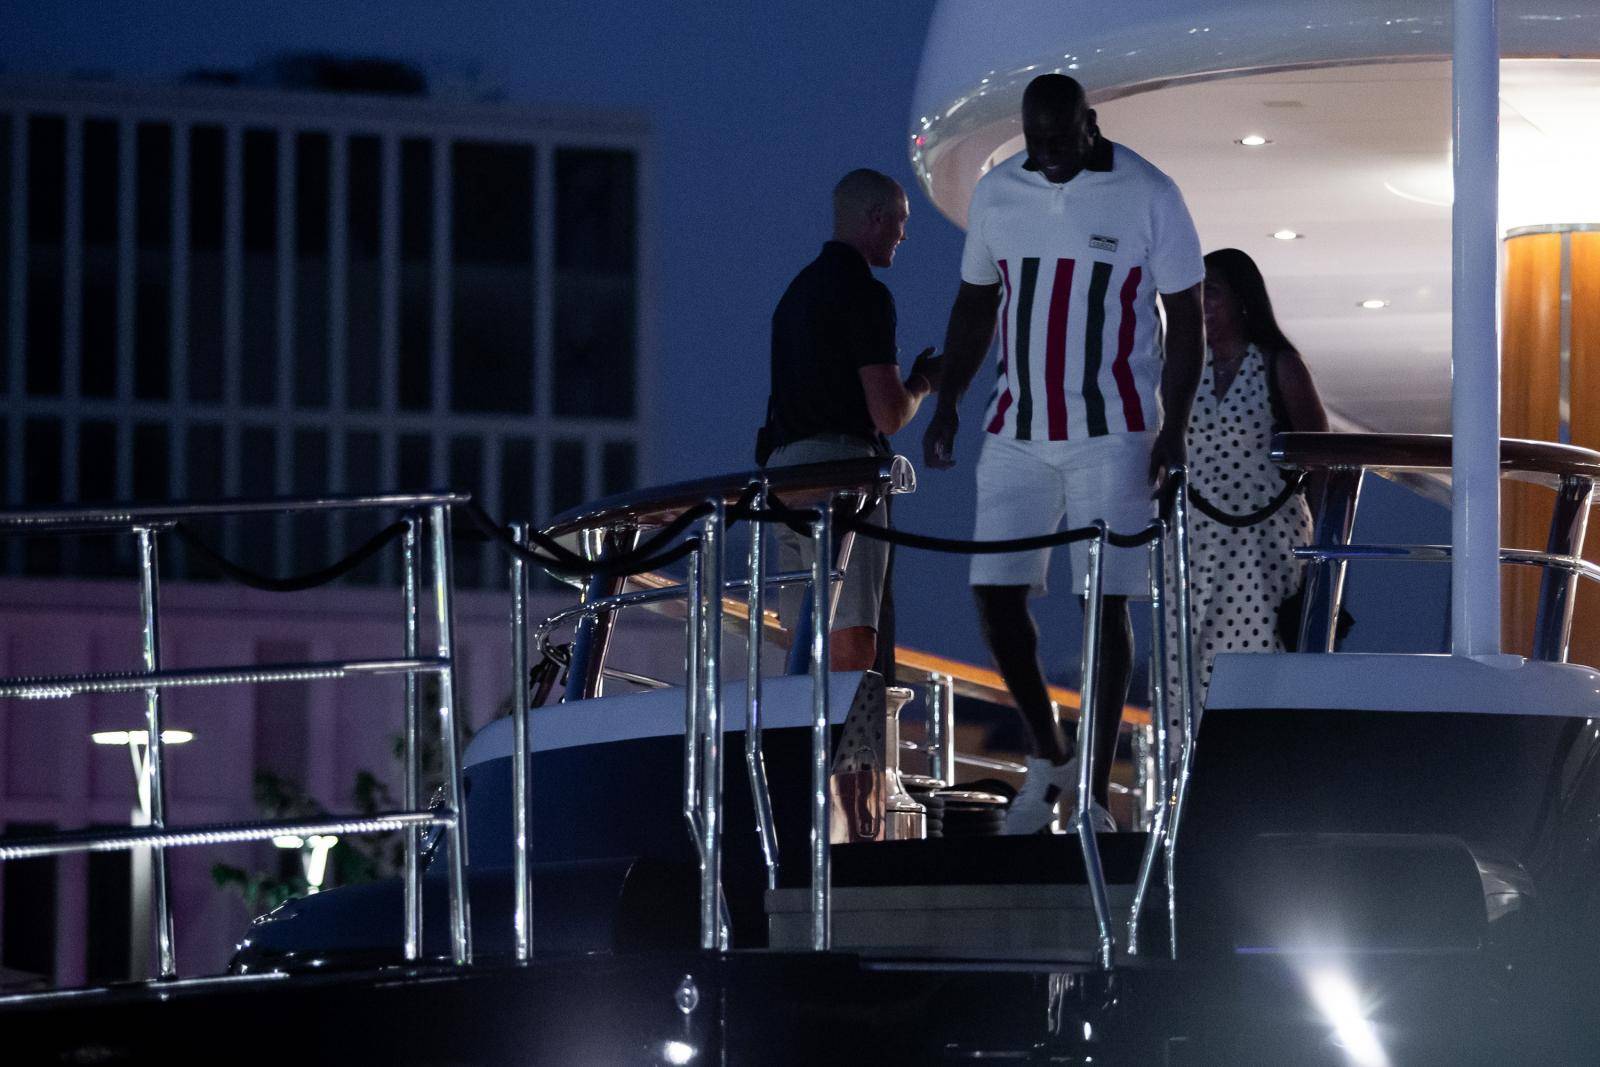 Split: Magic Johnson izasao pred mnogobrojne okupljene fanove s kojima se fotografirao